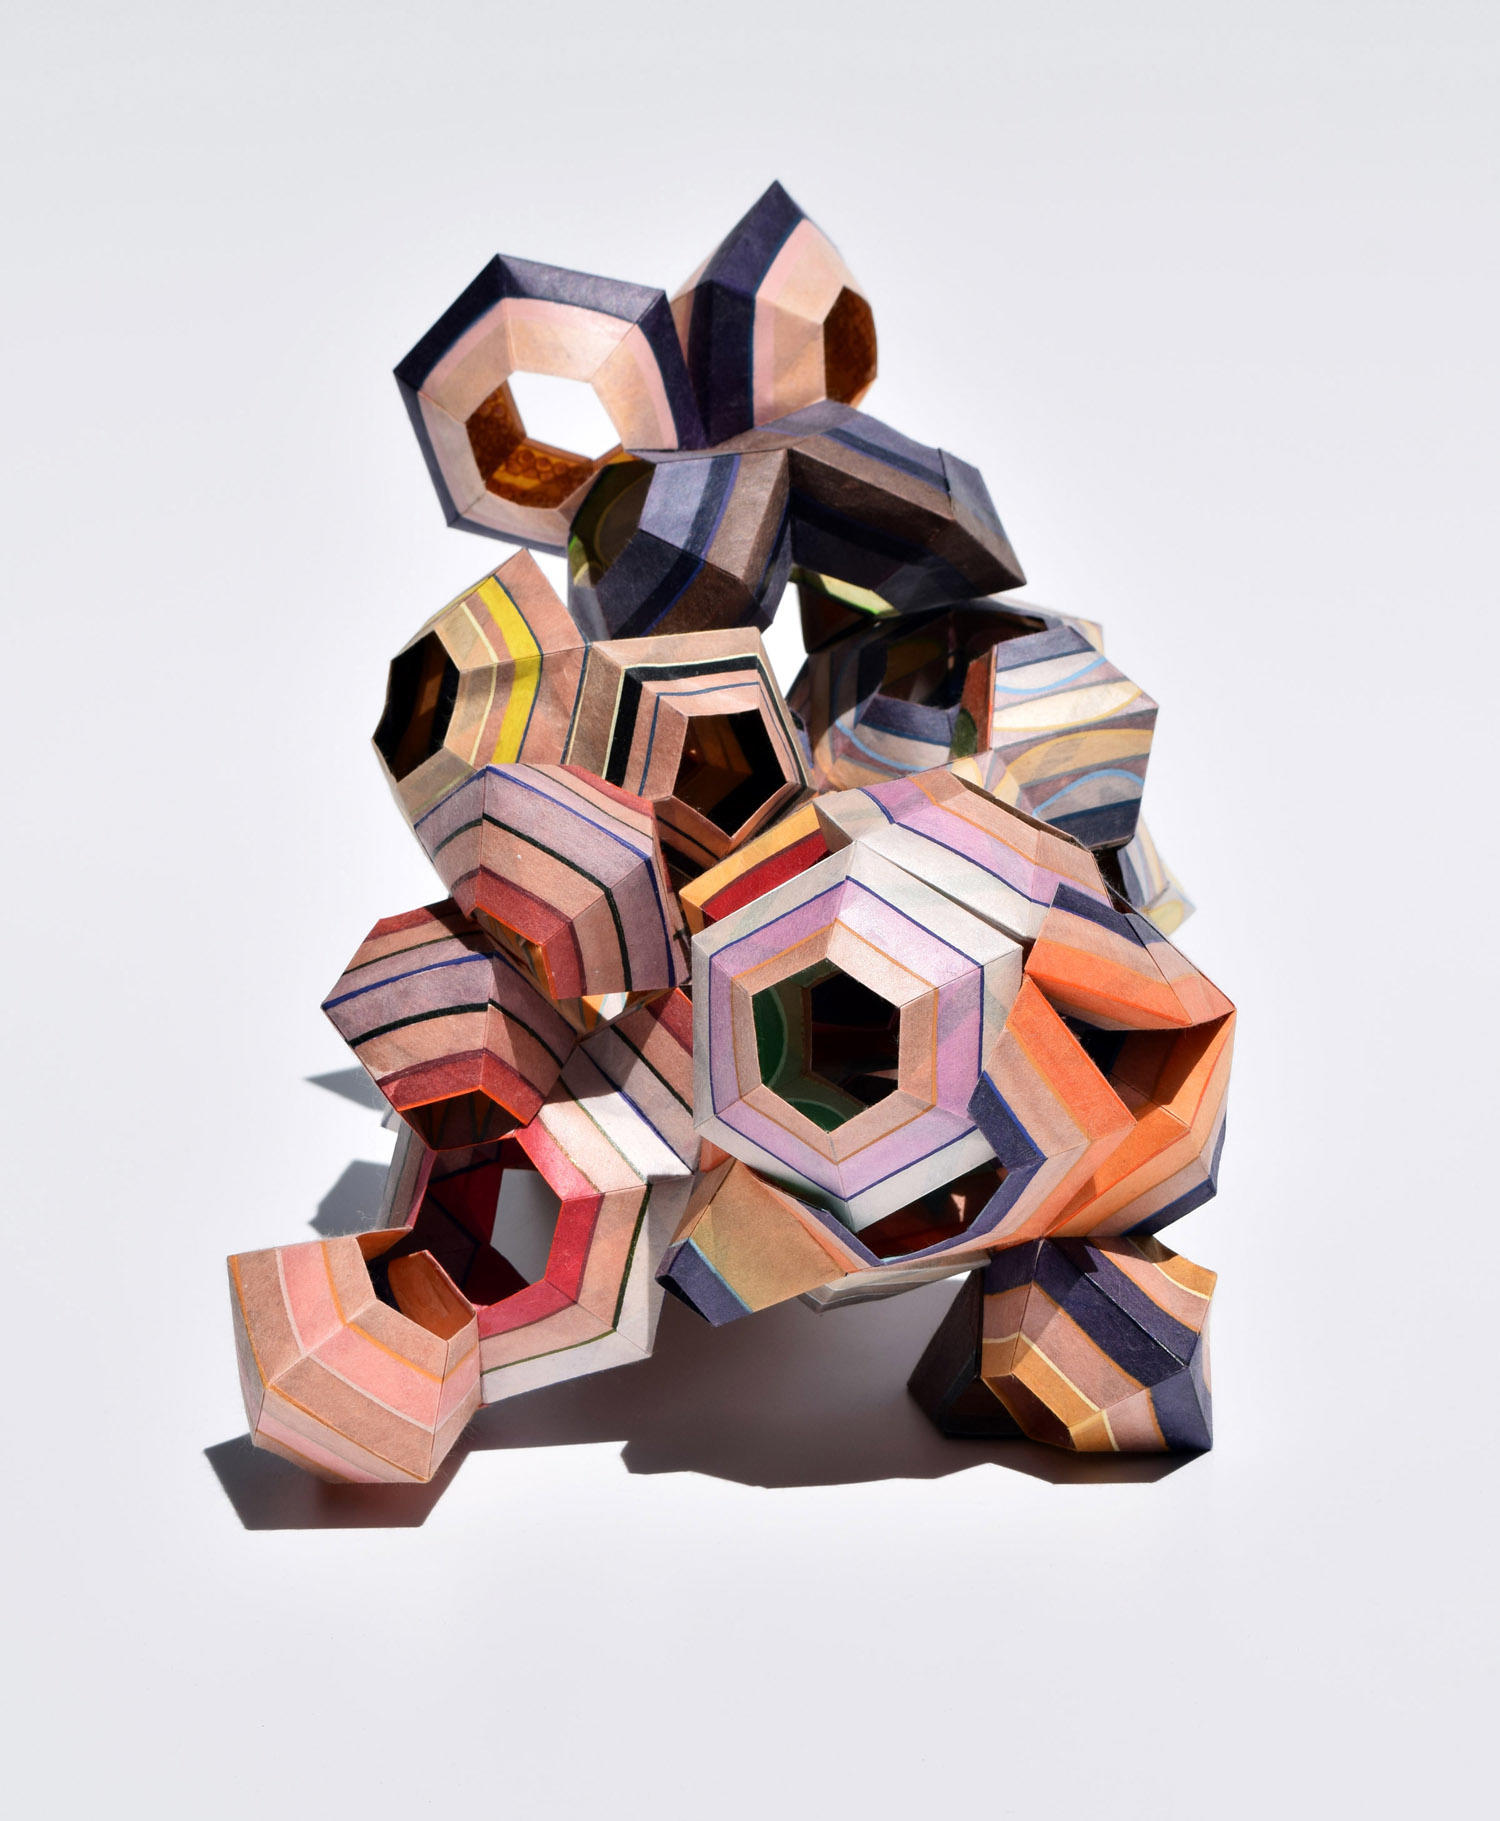 Sculptures made from Paper | Gestalten